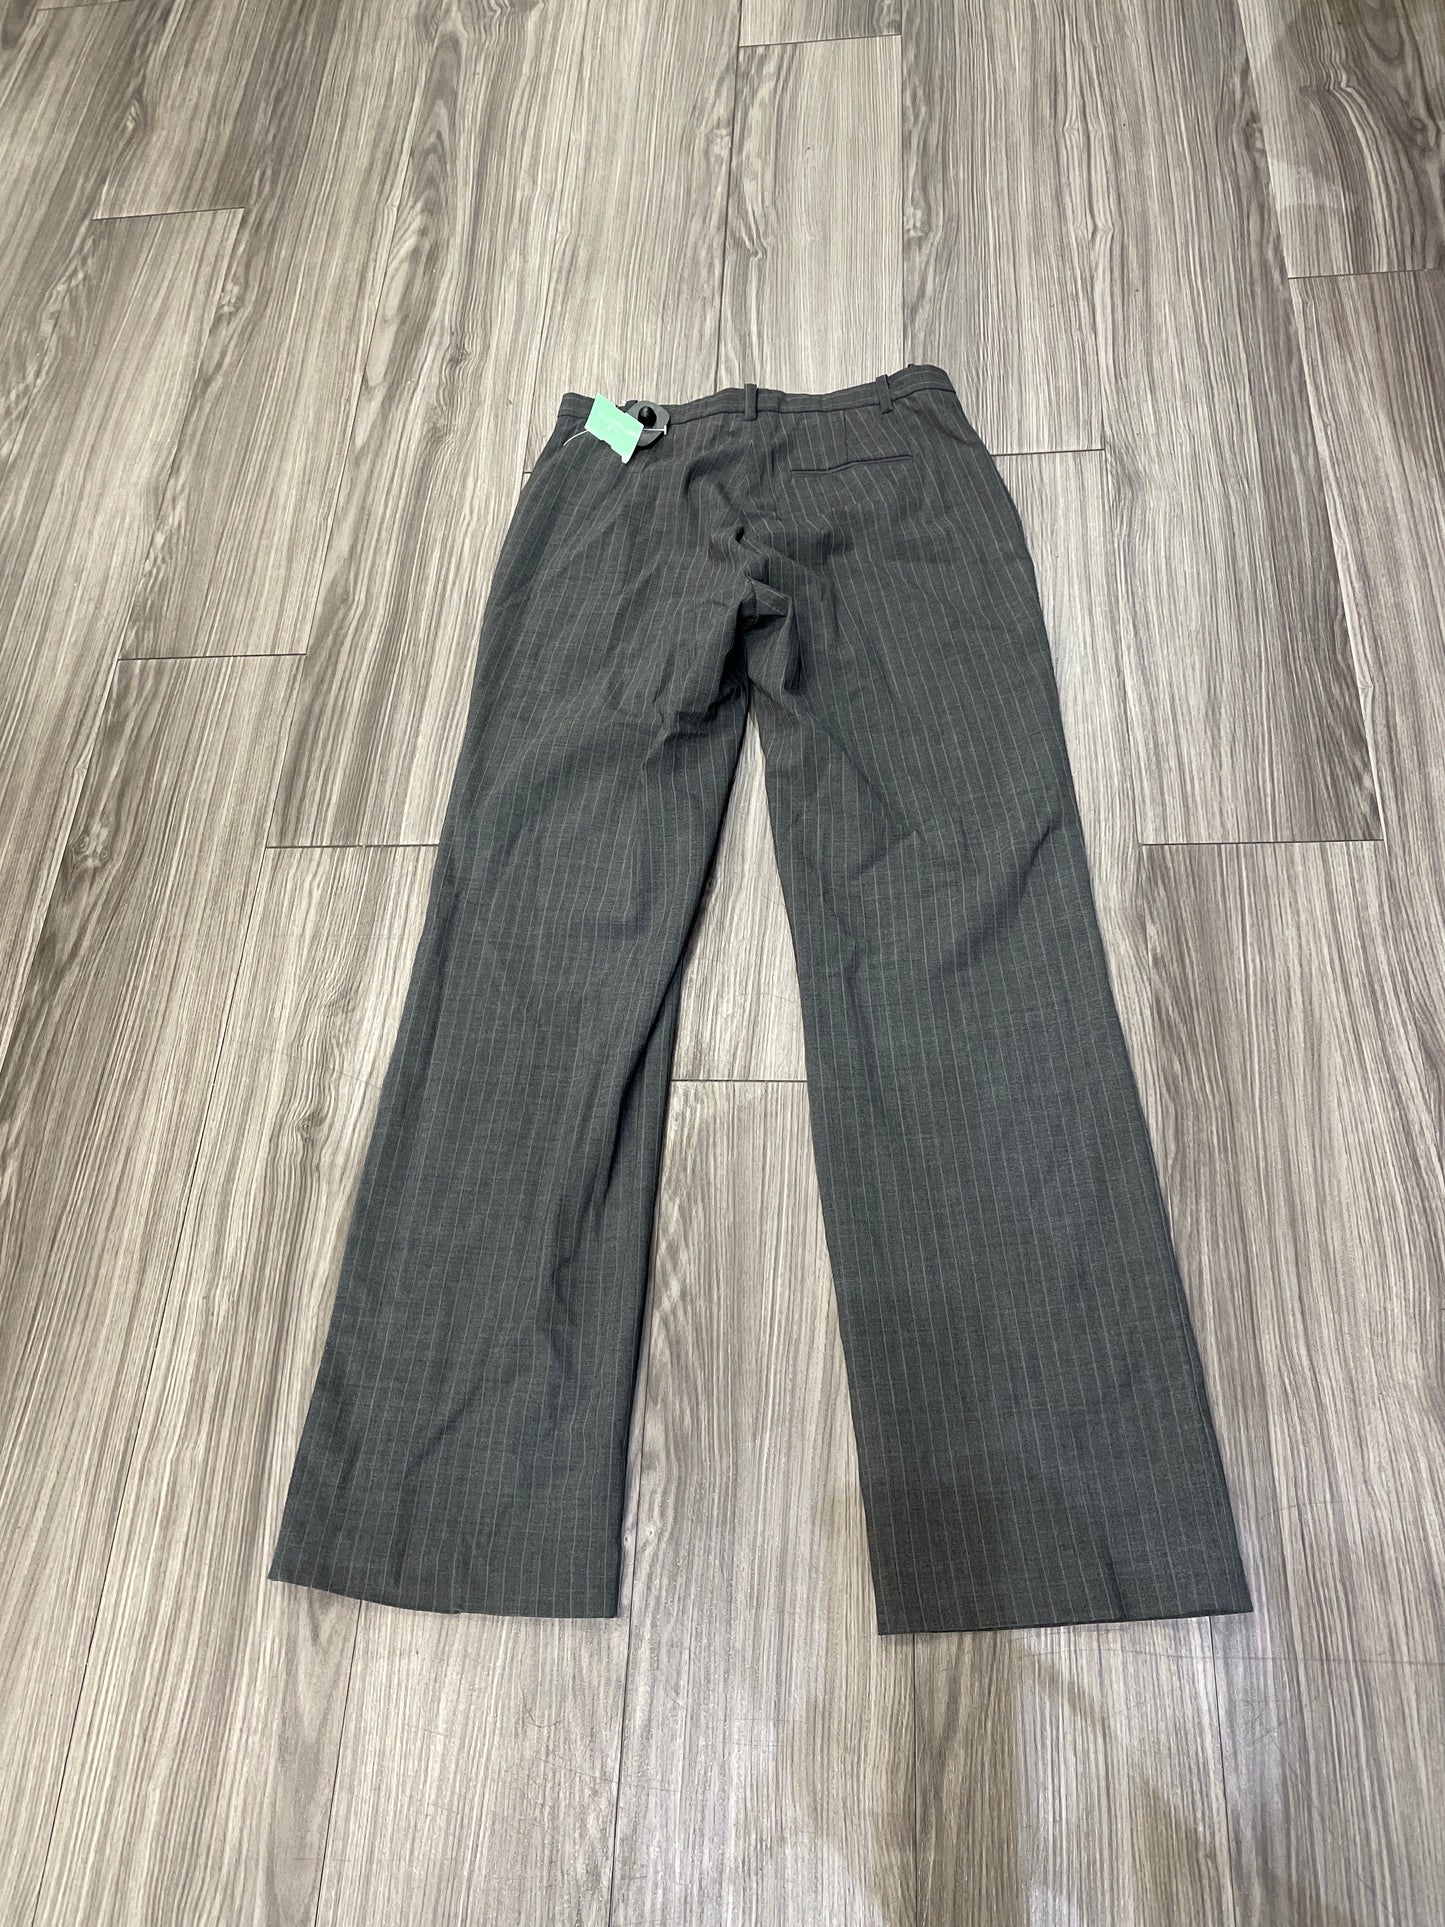 Grey Pants Dress Gap, Size 6